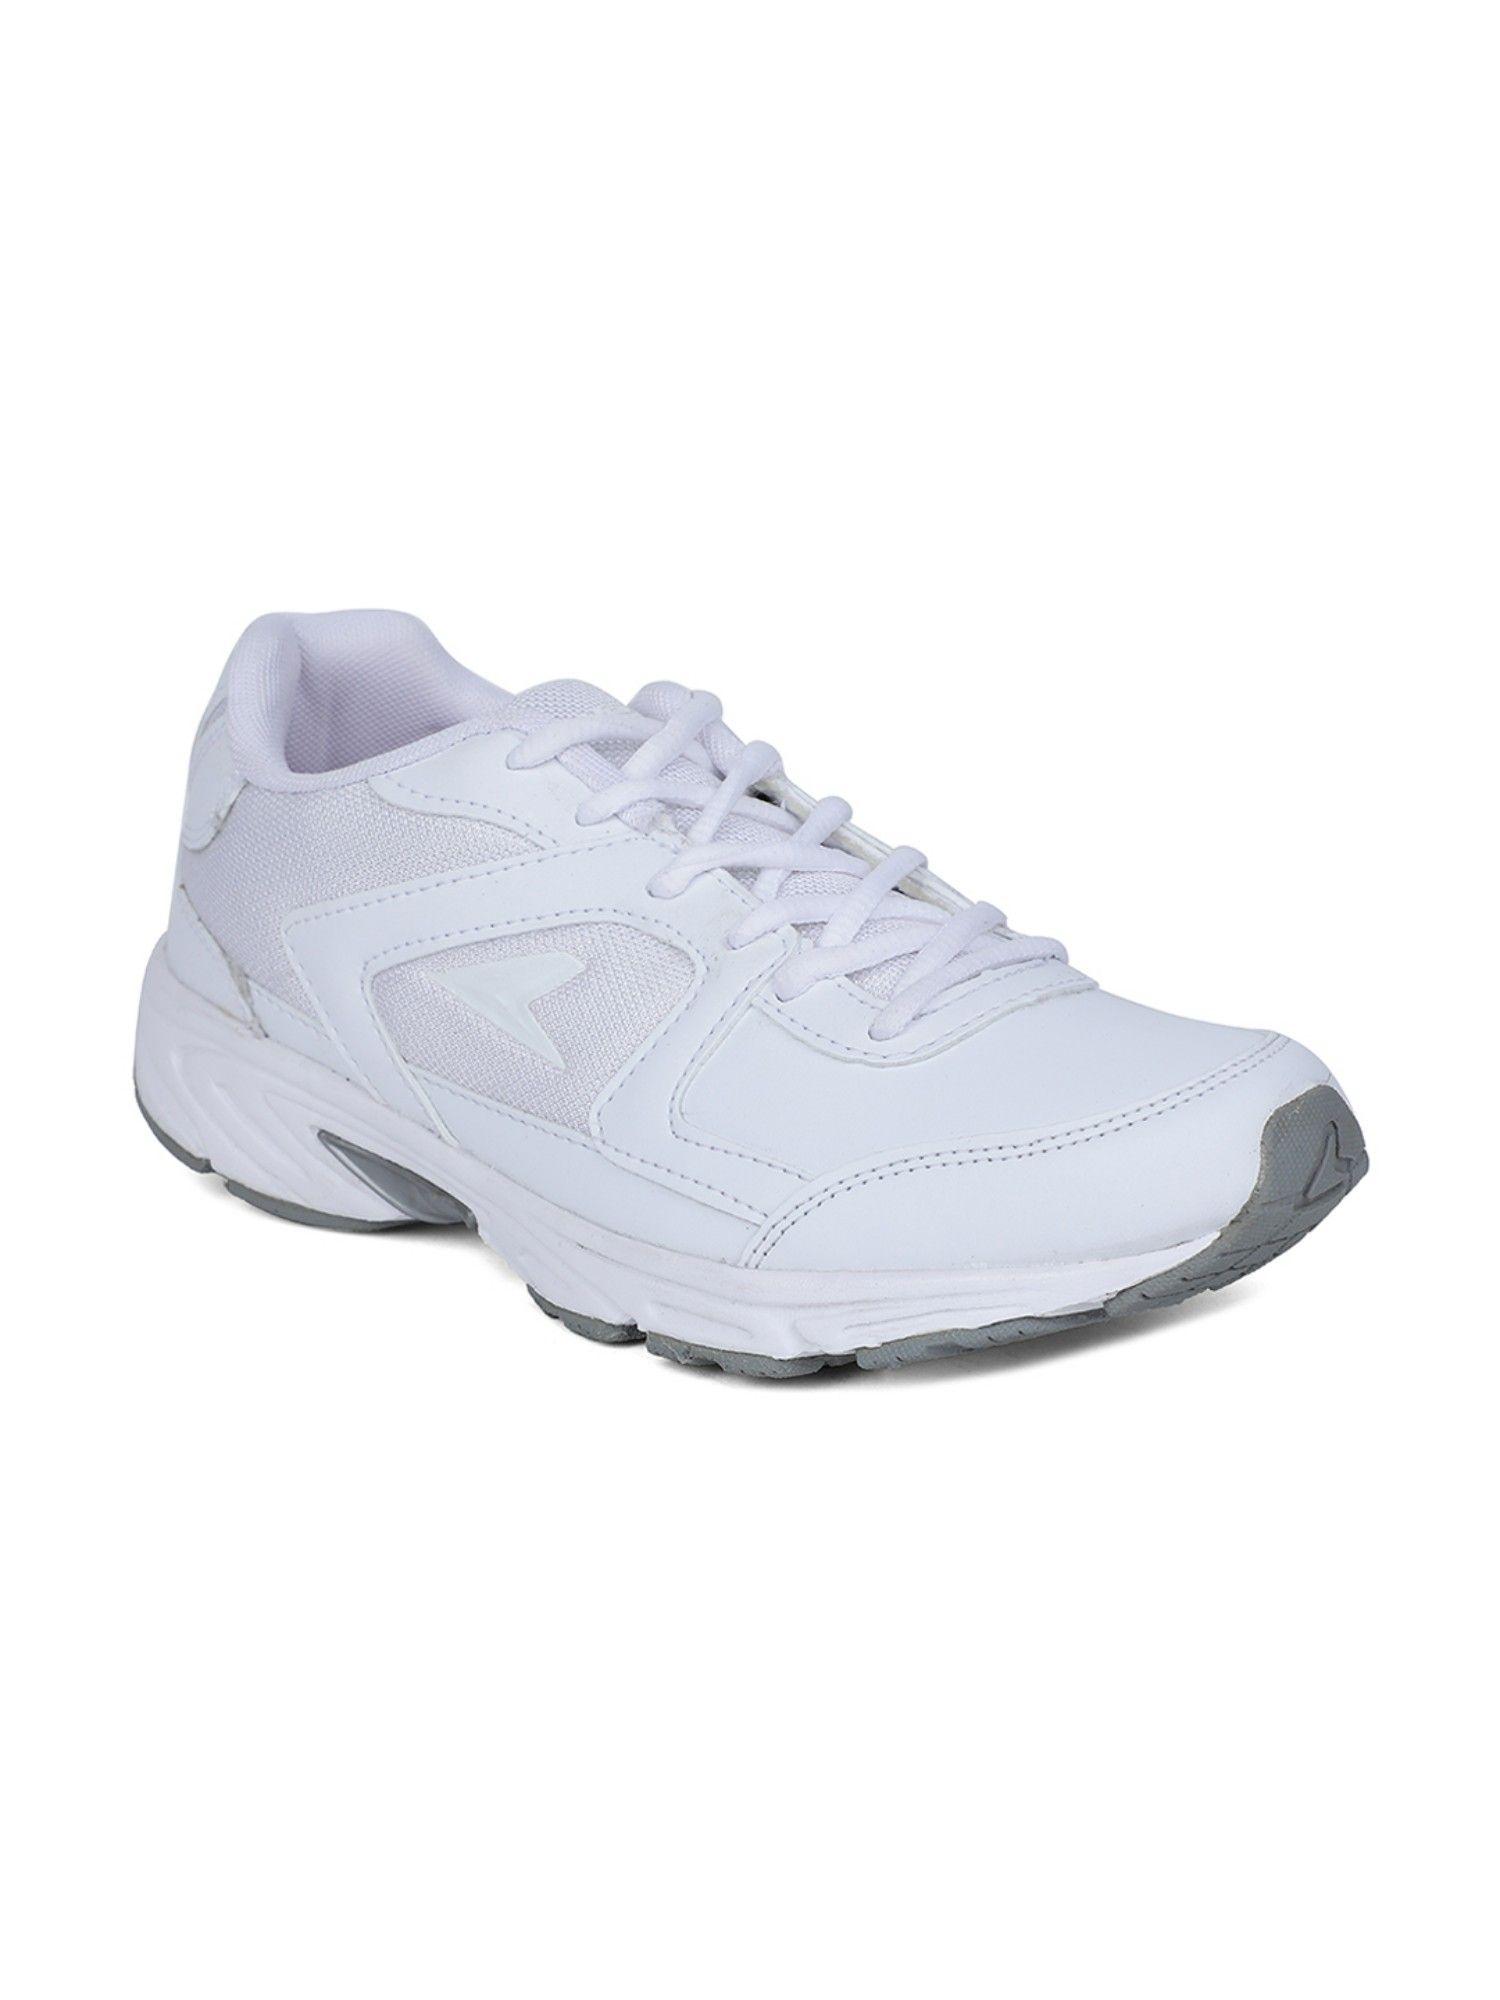 running shoes for men (white)